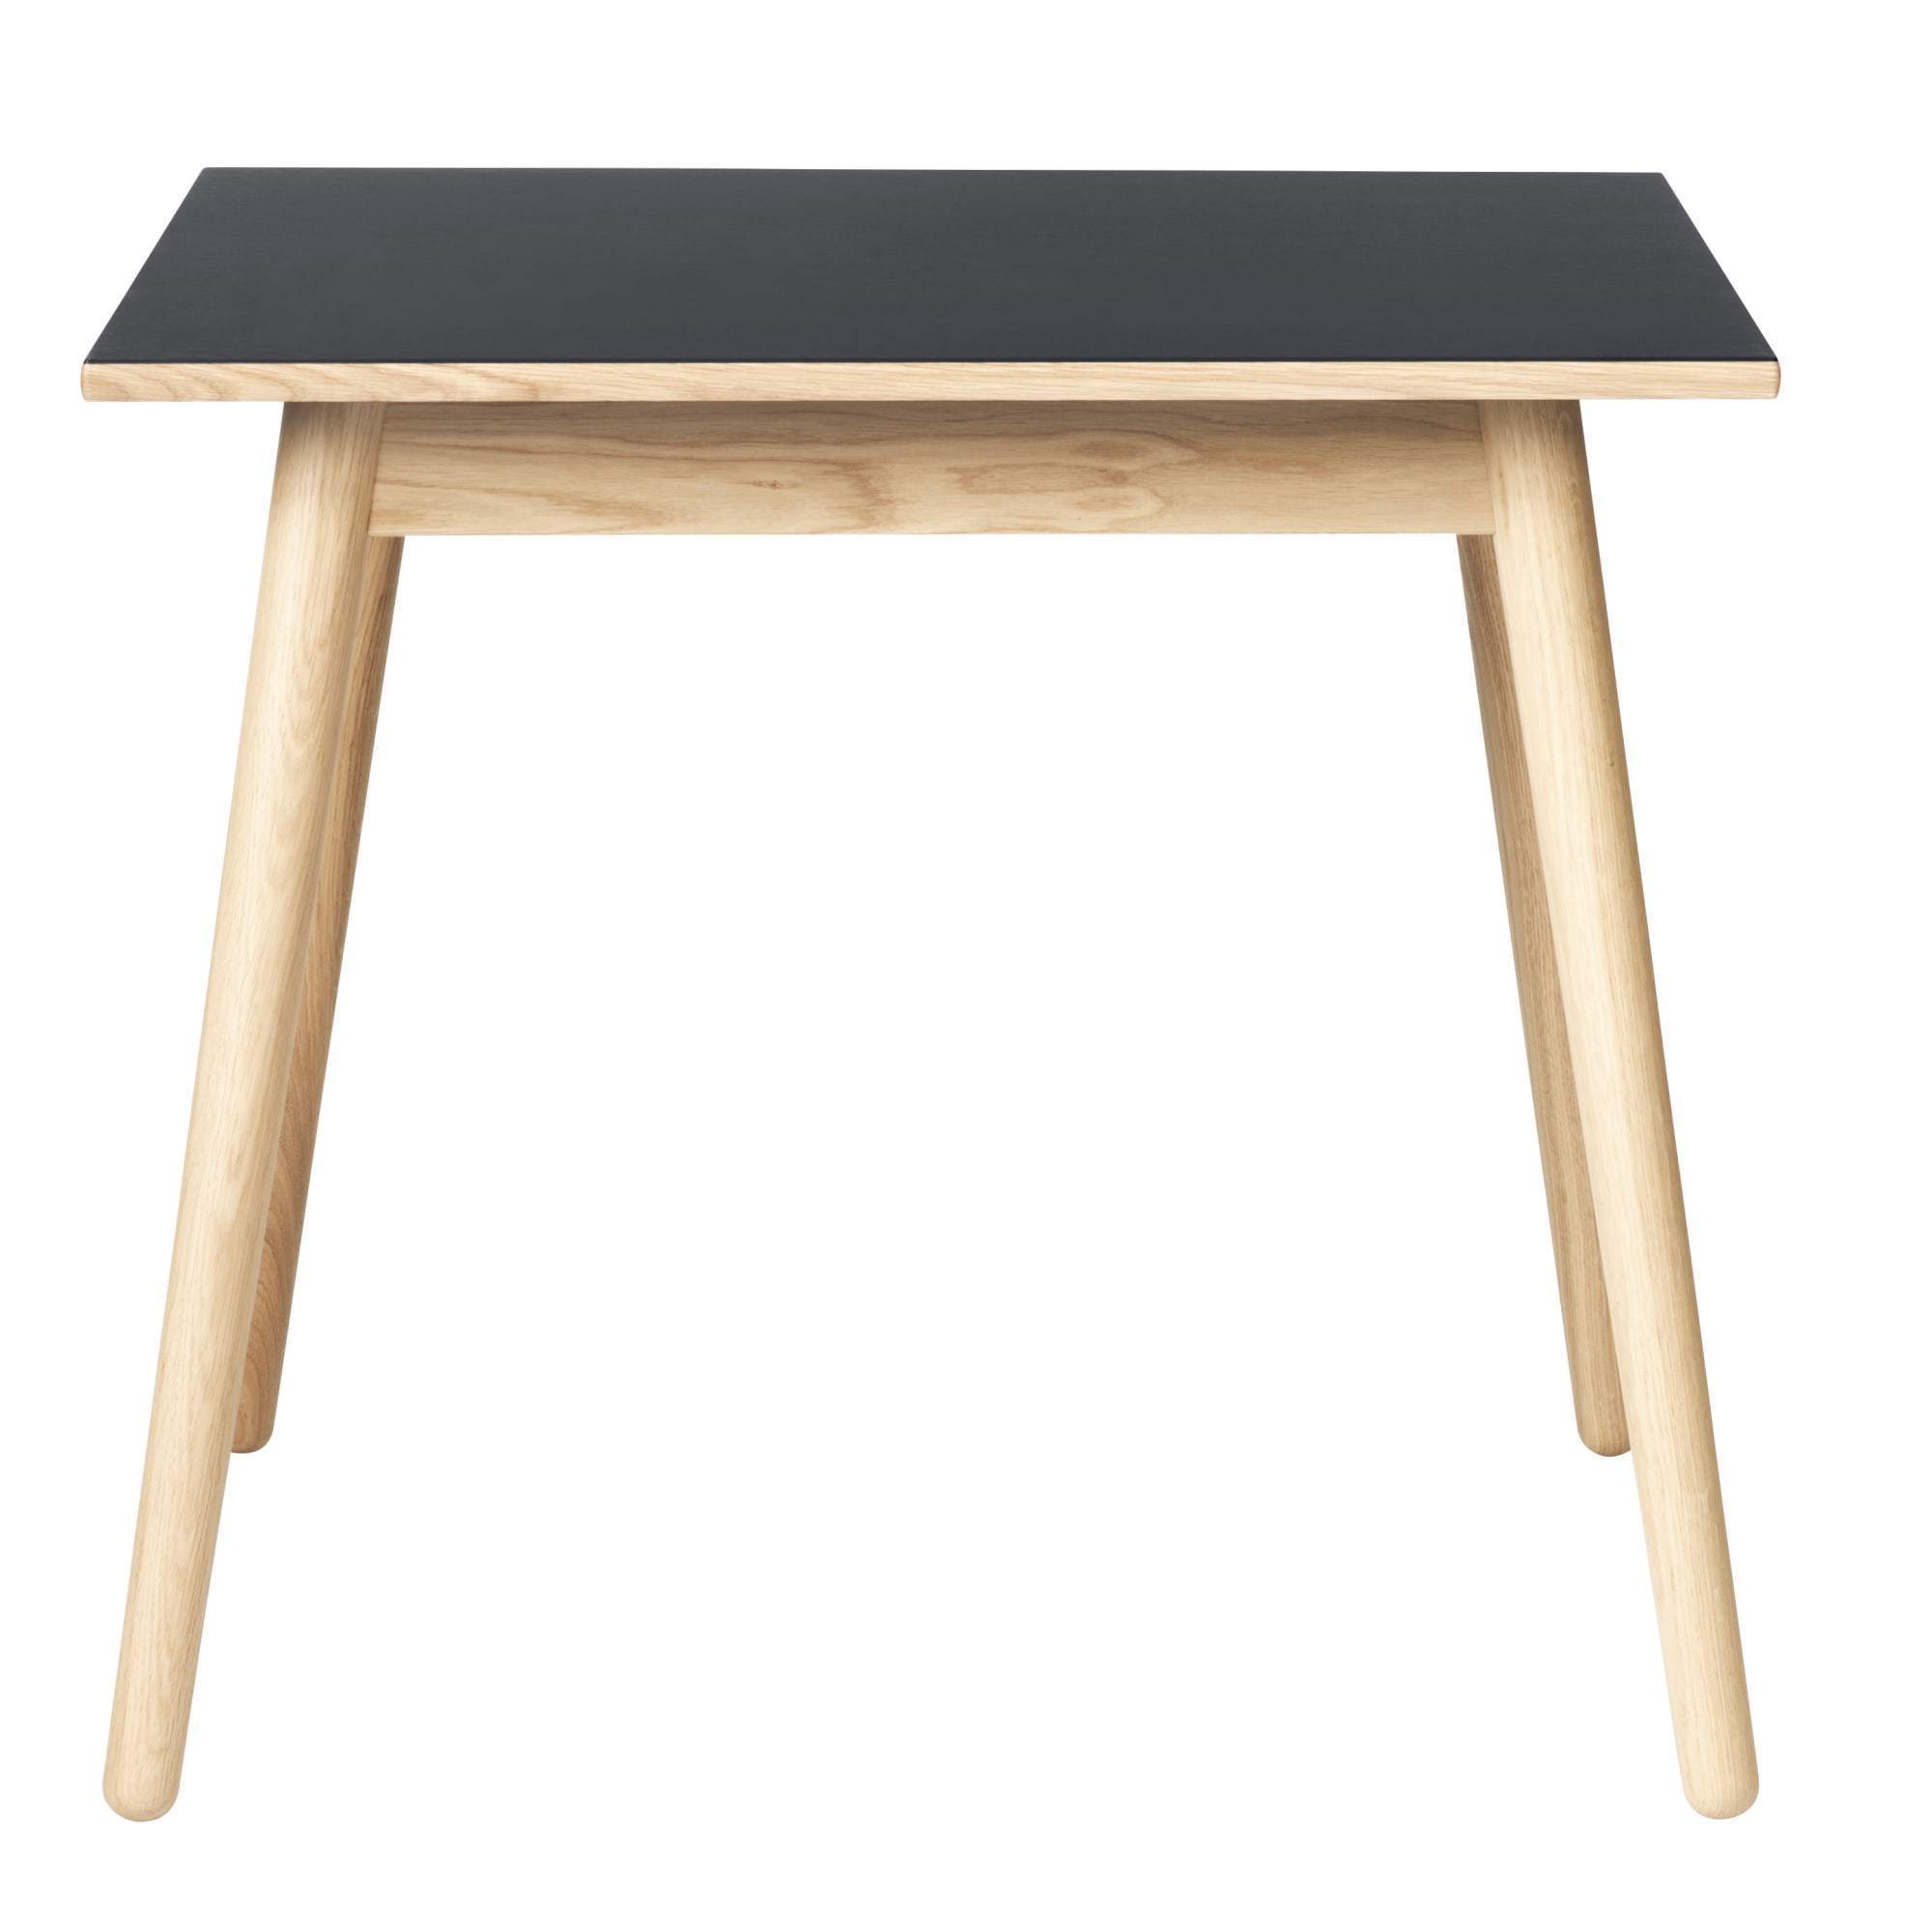 Fdb Møbler C35 Table à manger en chêne, plateau en linoléum gris foncé, 82x82 cm